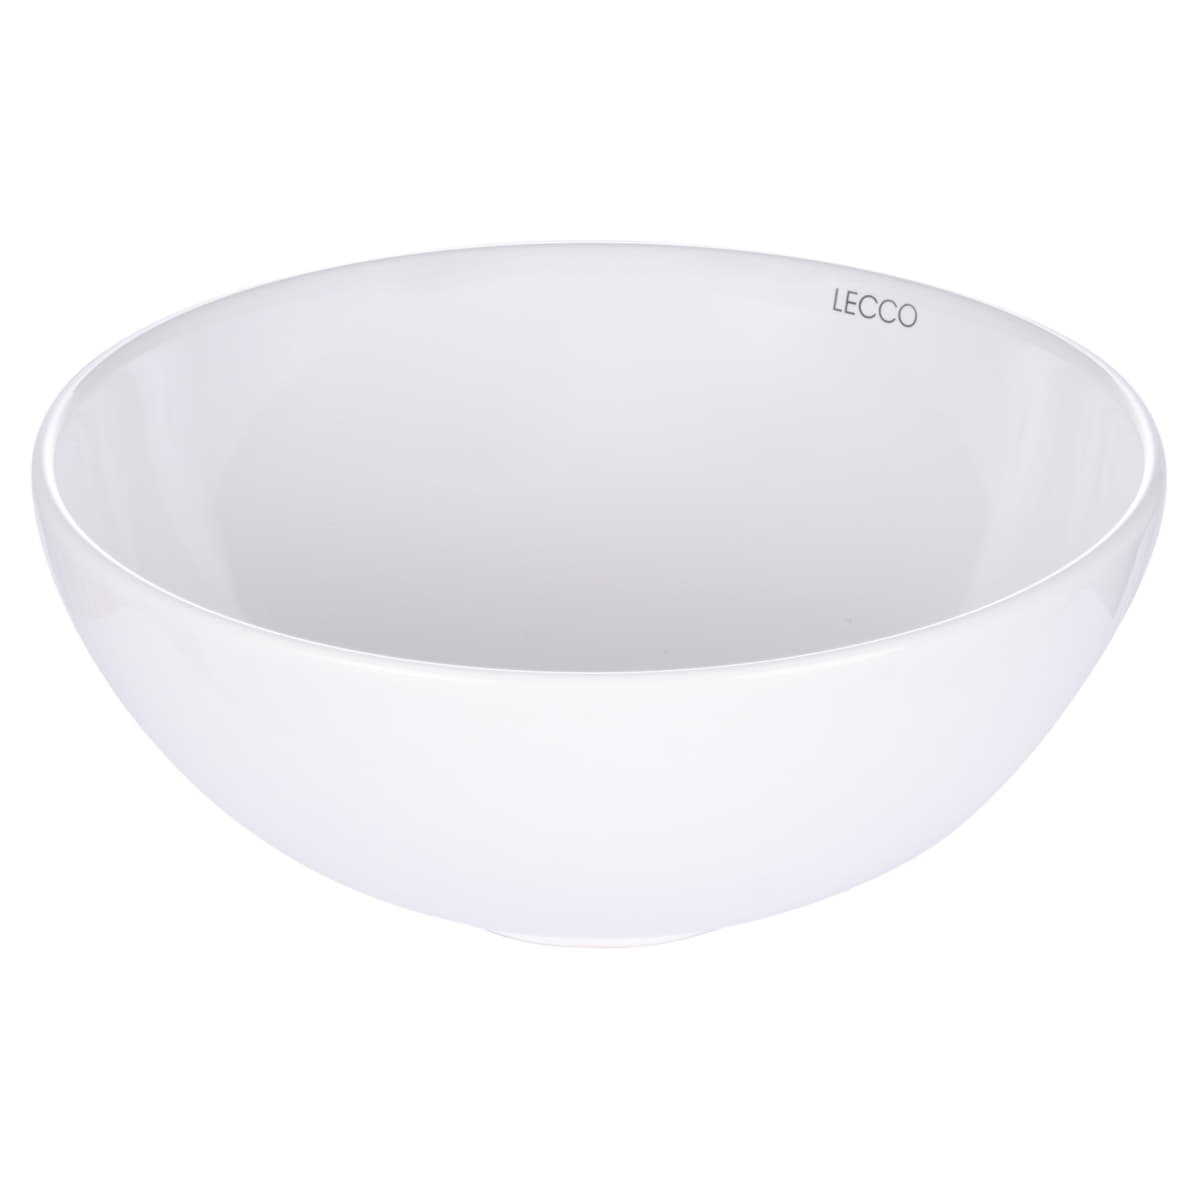 Lavamanos tipo vessel en porcelana Arhos 32.5×32.5×14.5 cms. Blanco